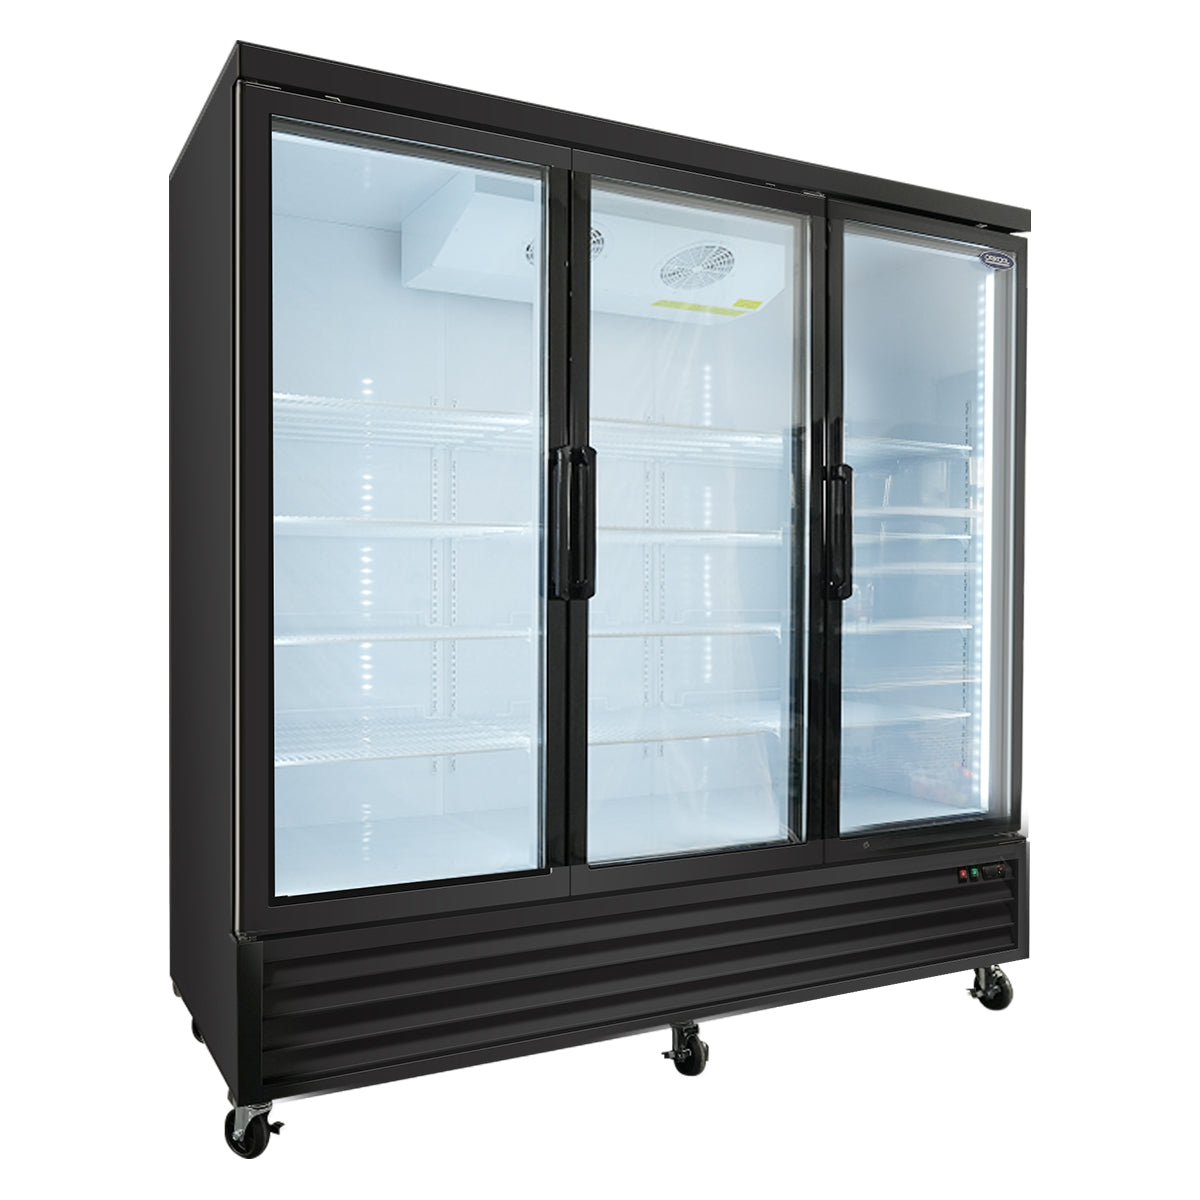 ORIKOOL SD2090FT 81" Triple Swing Glass Door Merchandiser Freezer 70 cu.ft. Commercial Freezer, Black